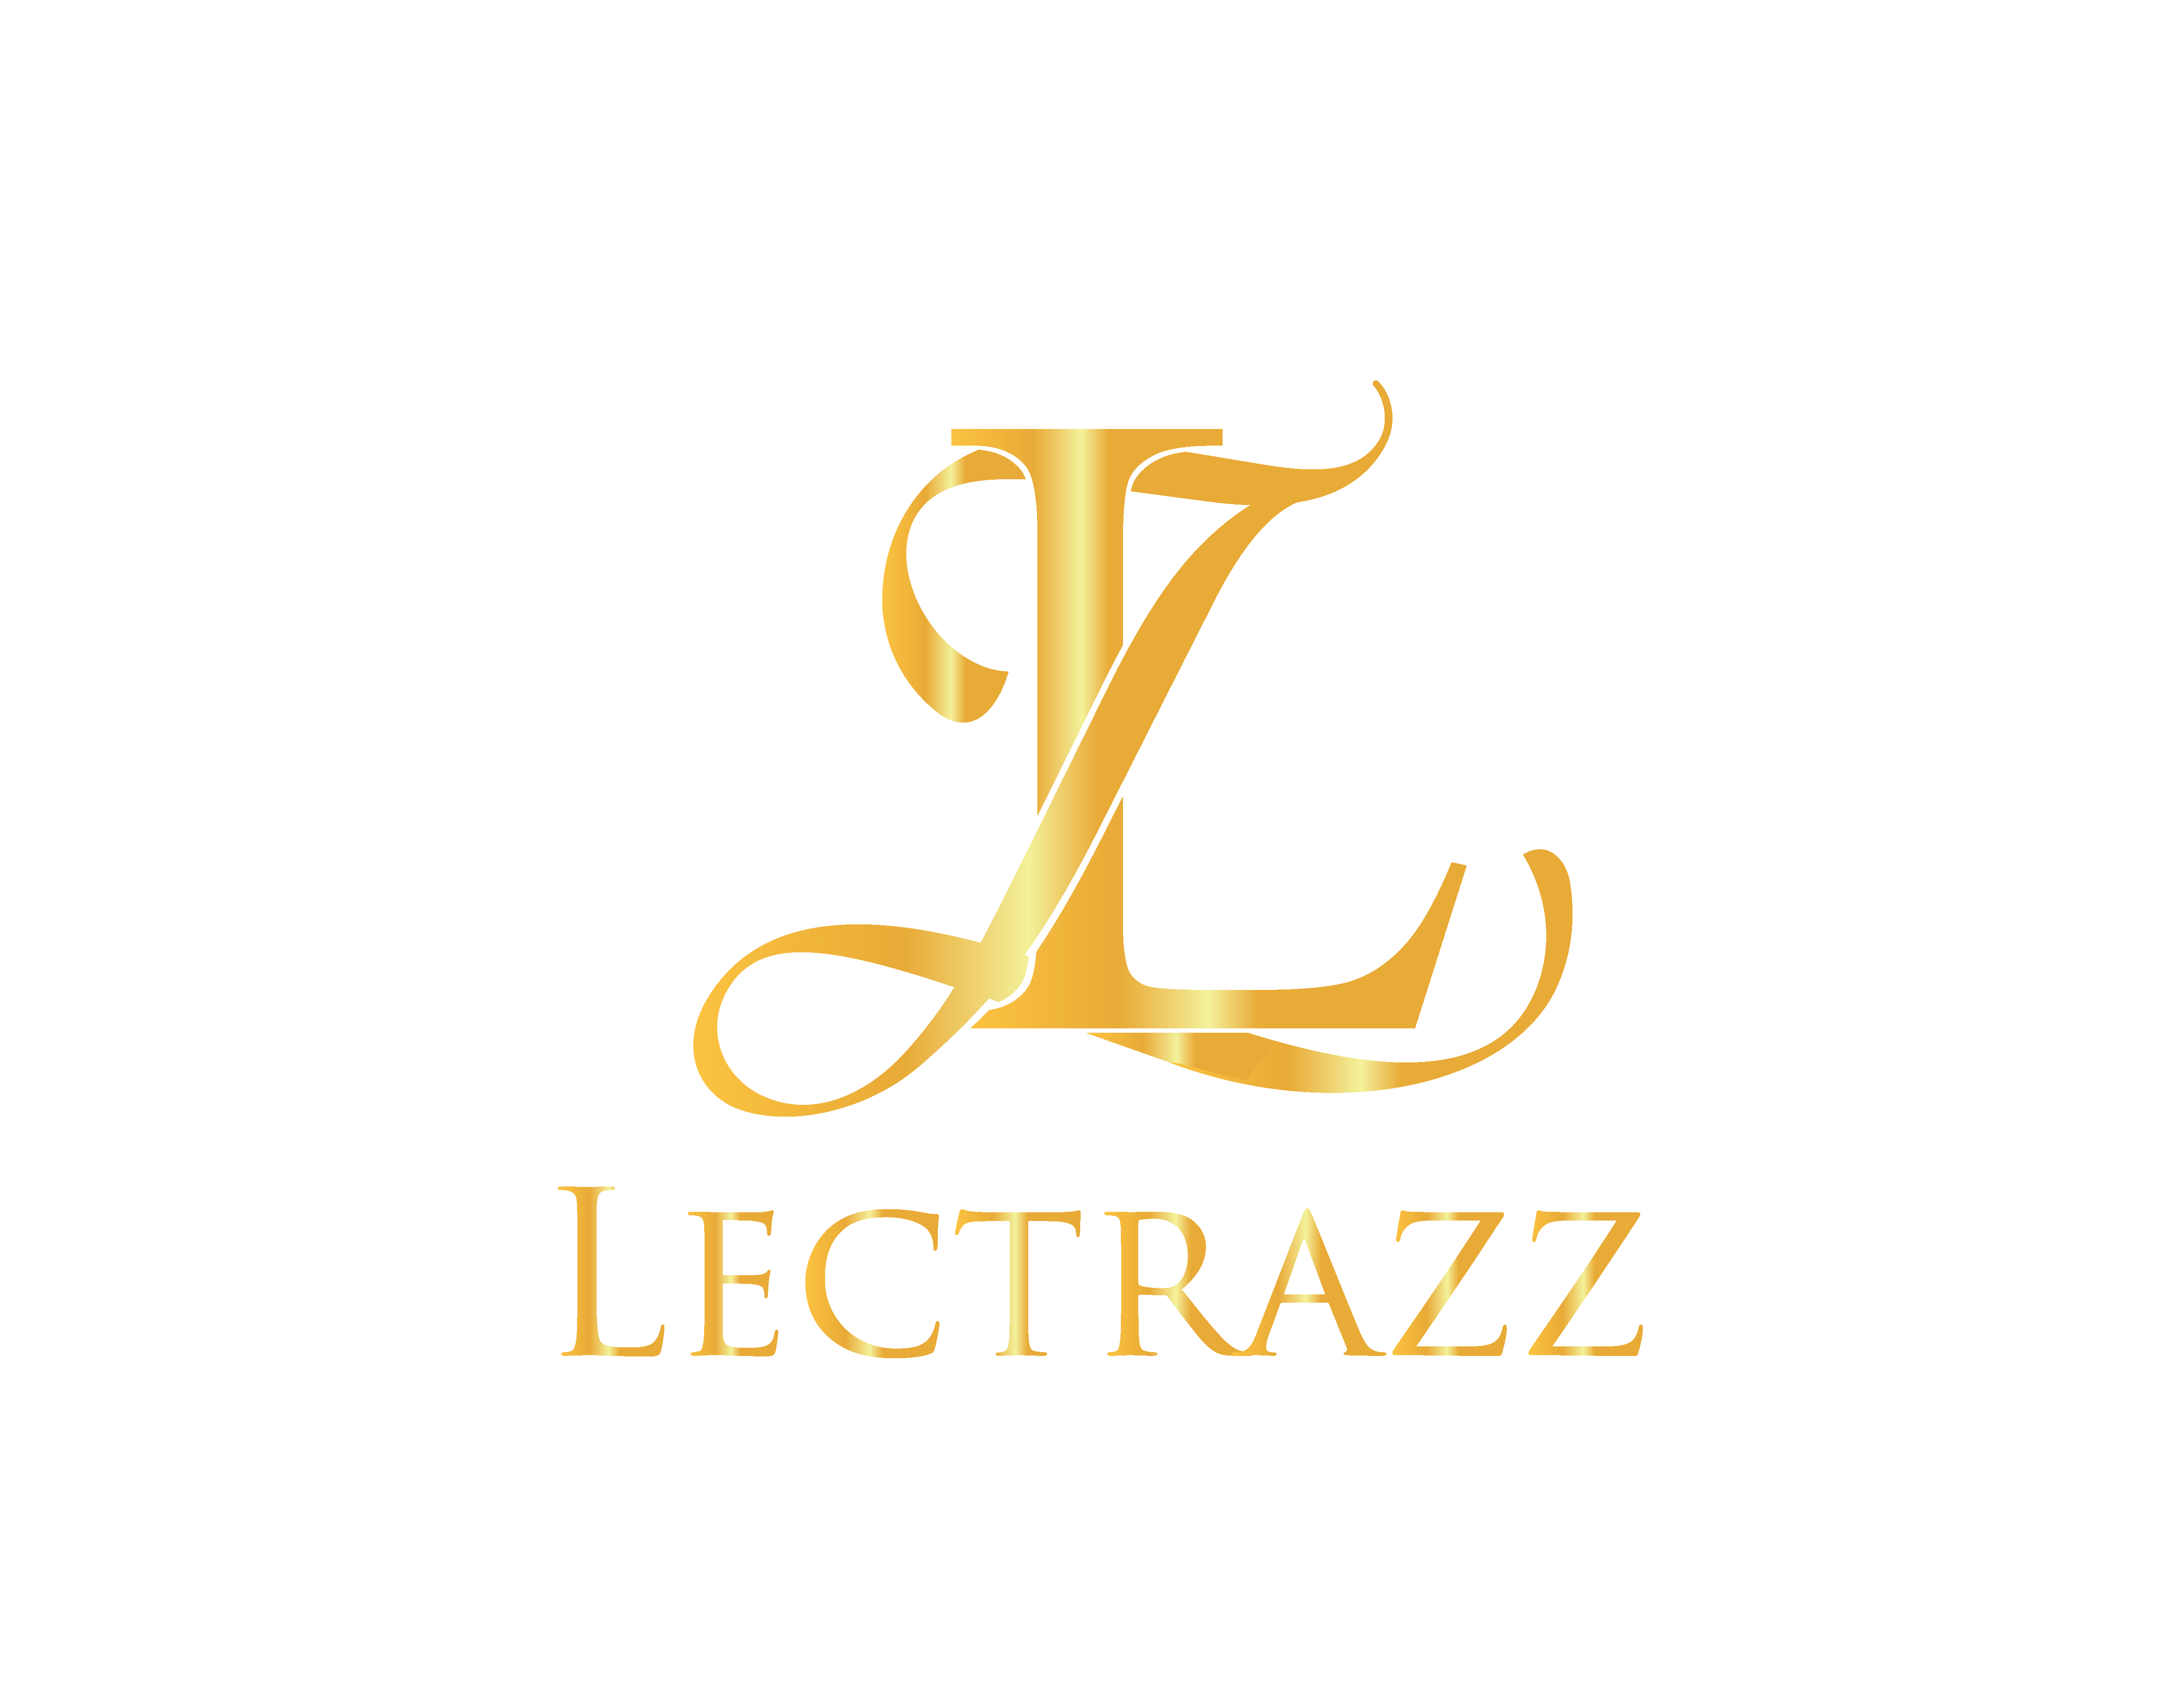 Lectrazz.com